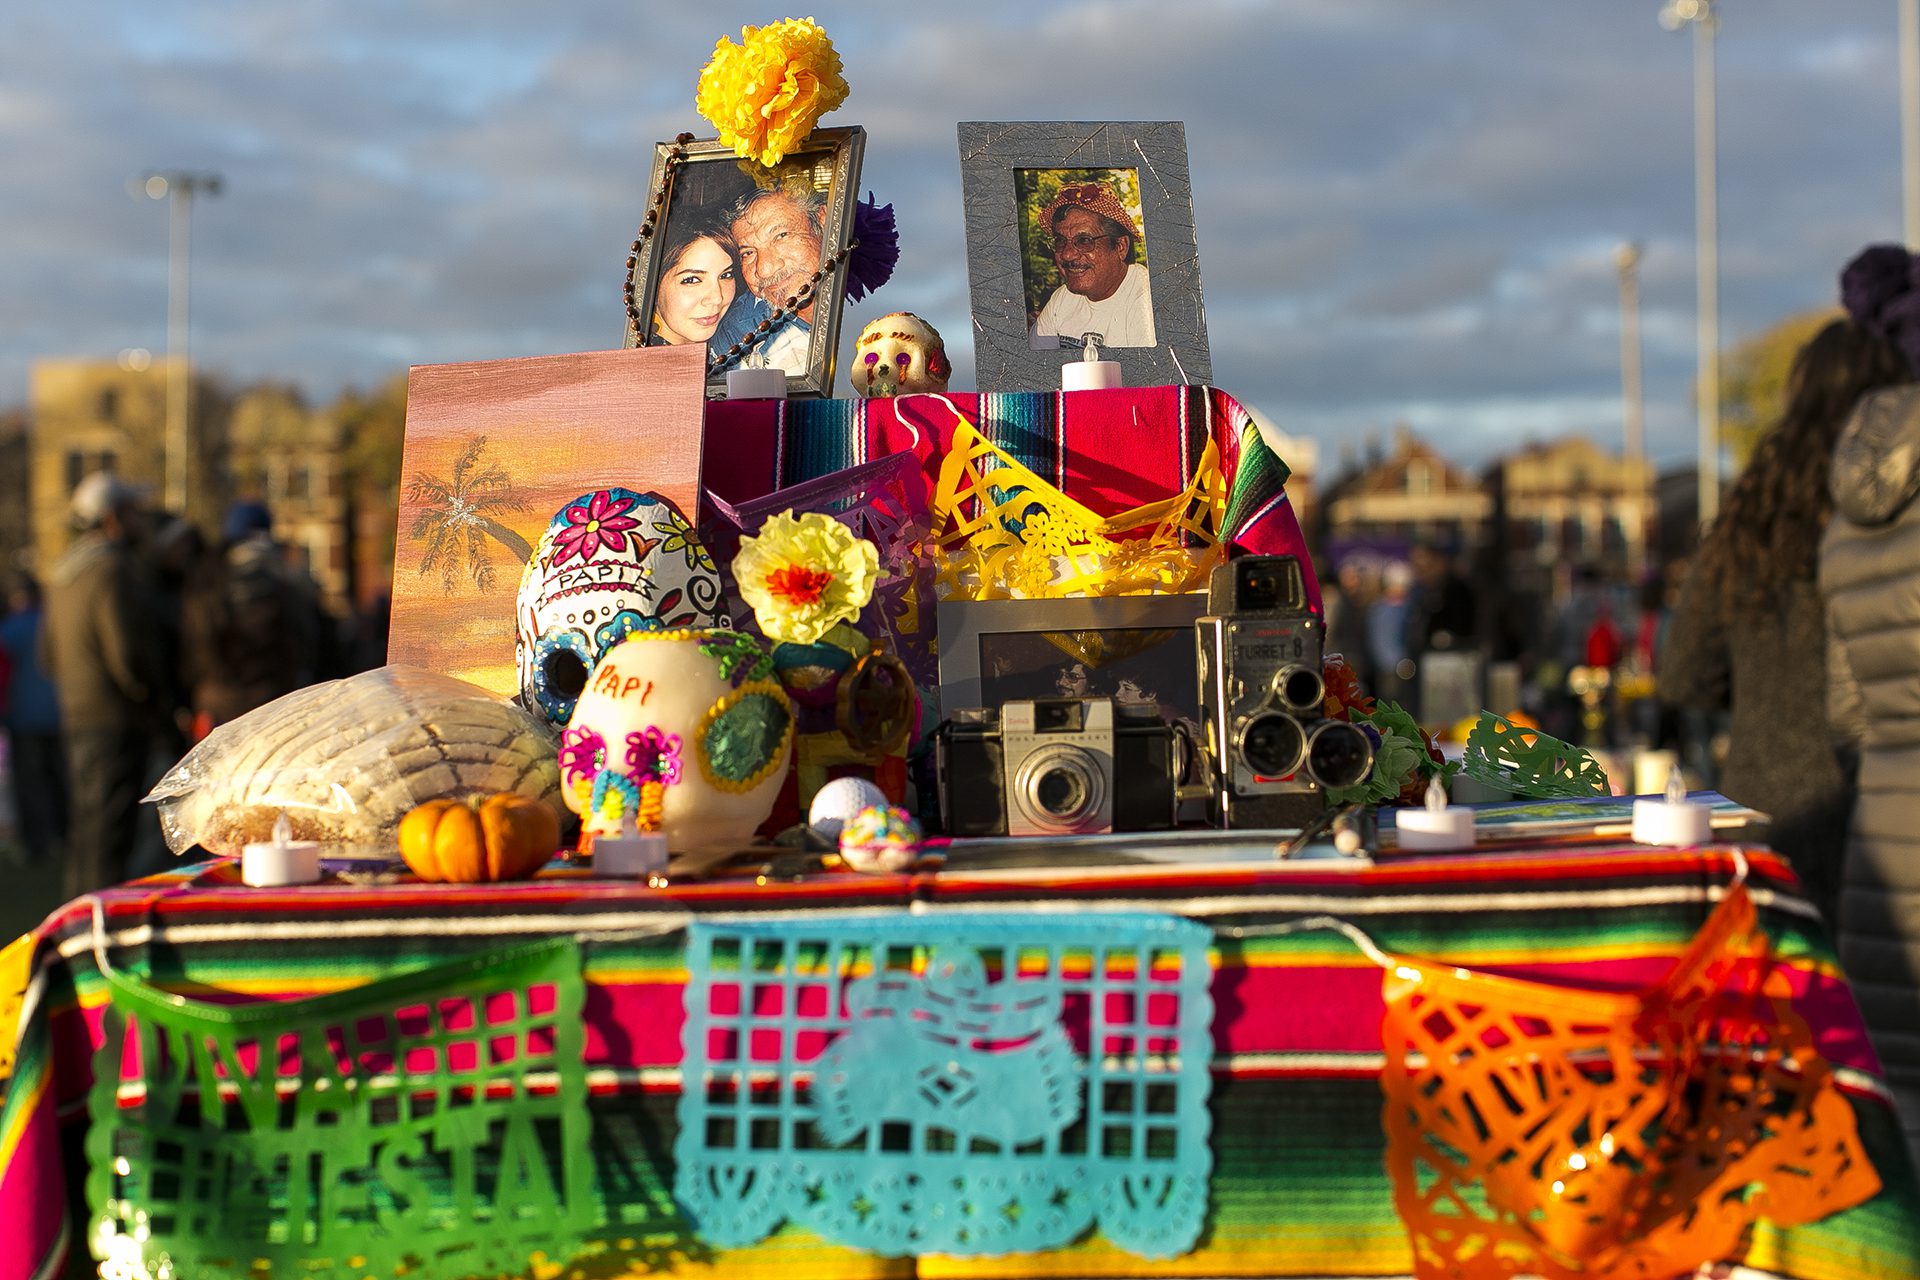 Dia de los Muertos ofrenda with photos, cameras, candles, conchas, flags, and sugar skulls